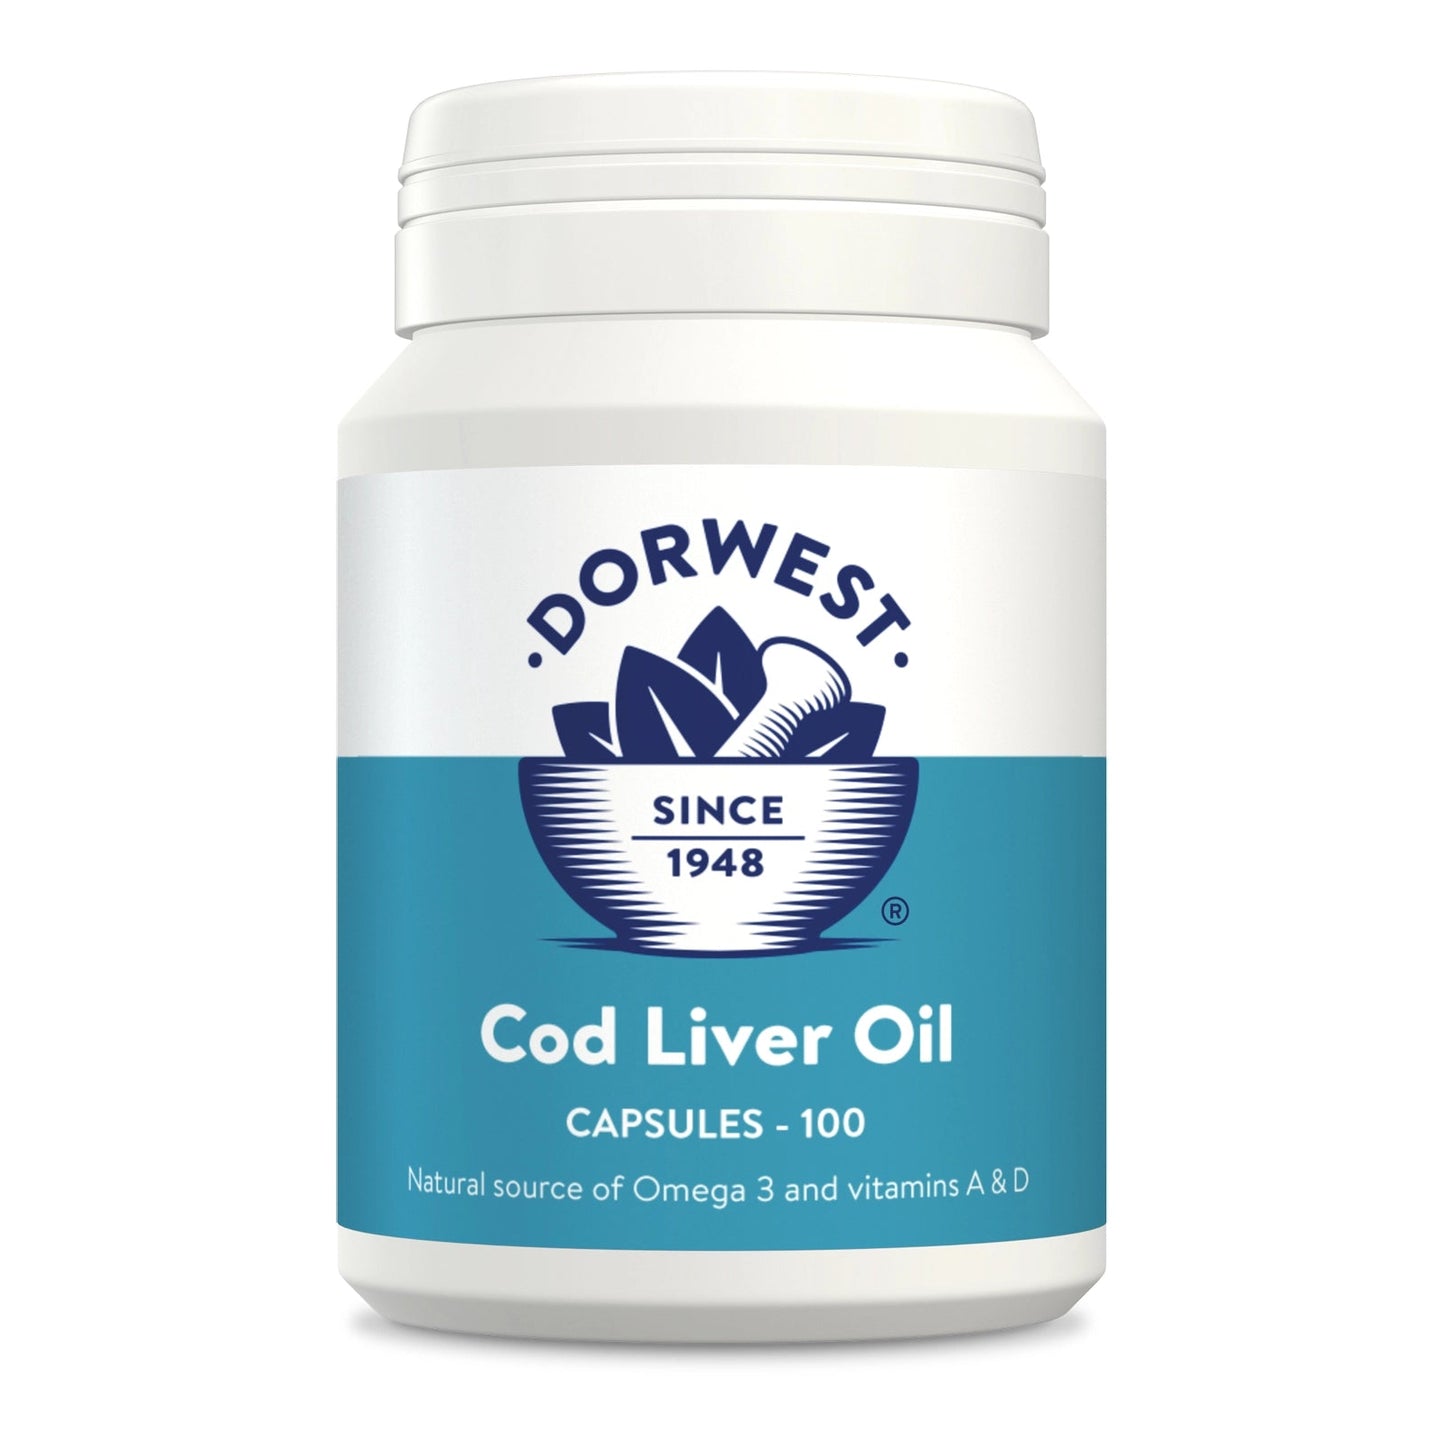 Cod Liver Oil Capsules - 100 Capsules